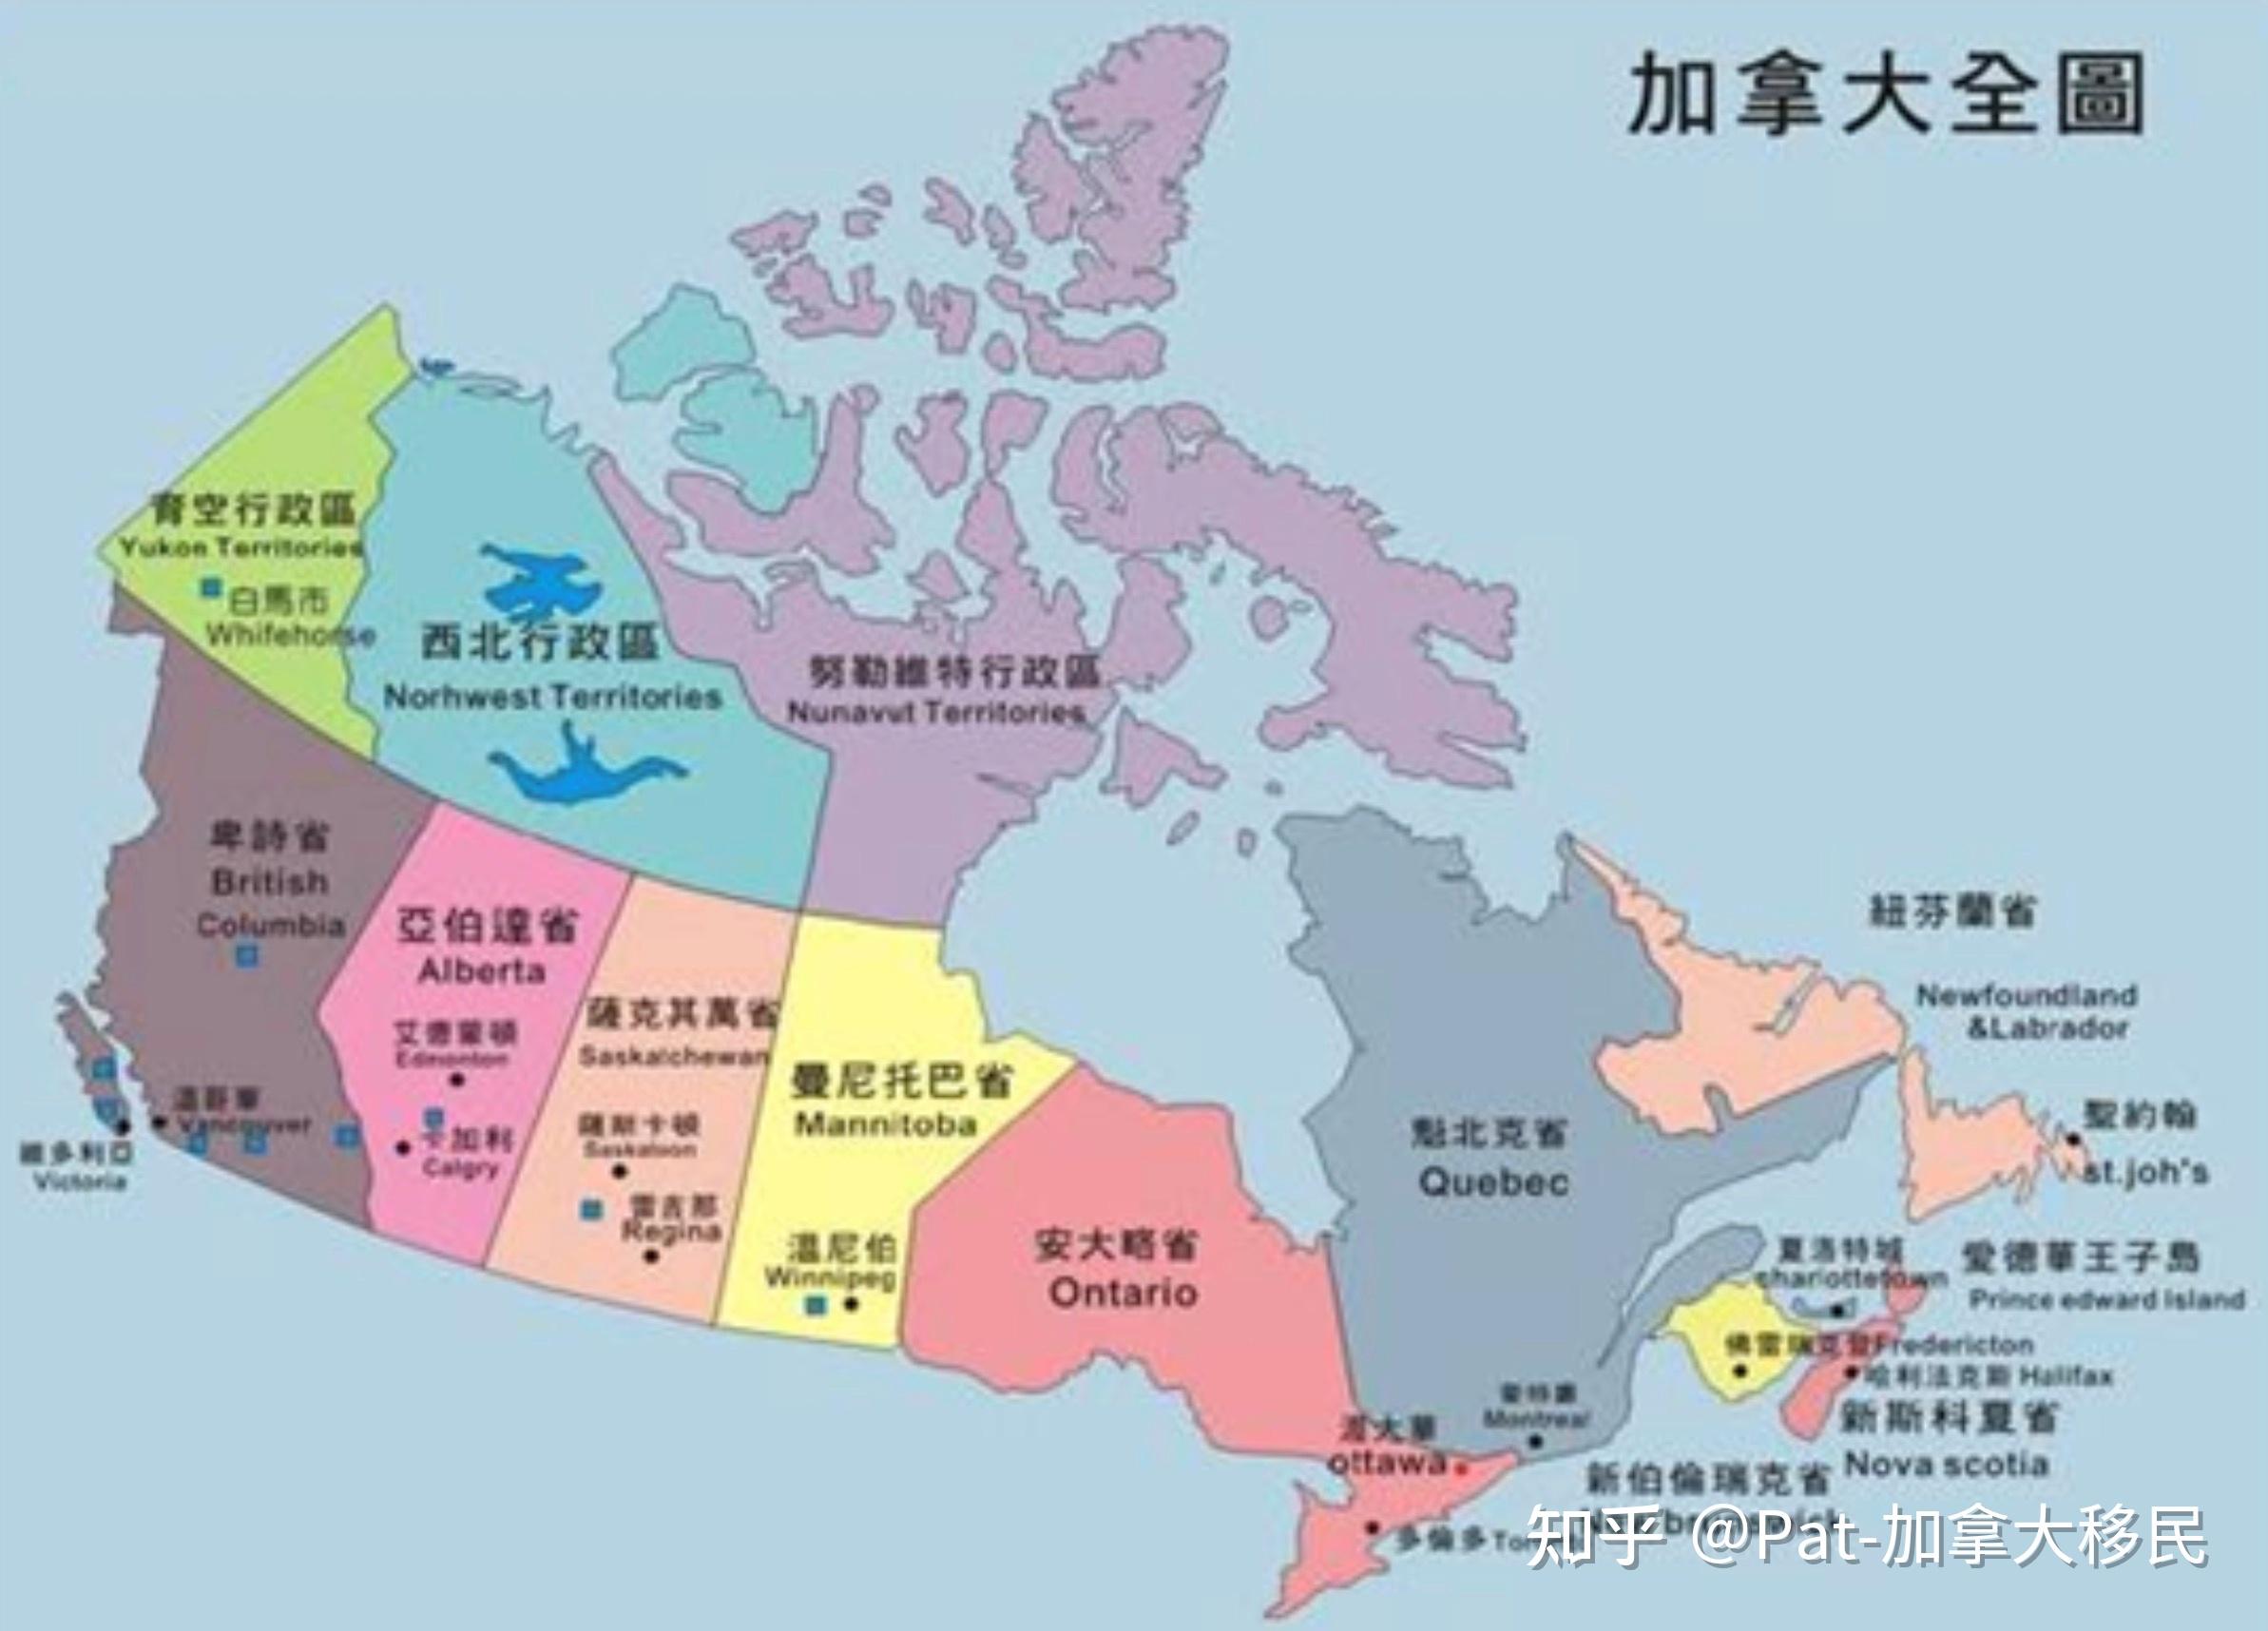 史上最全的加拿大72个移民项目大盘点(除了技术移民和投资移民